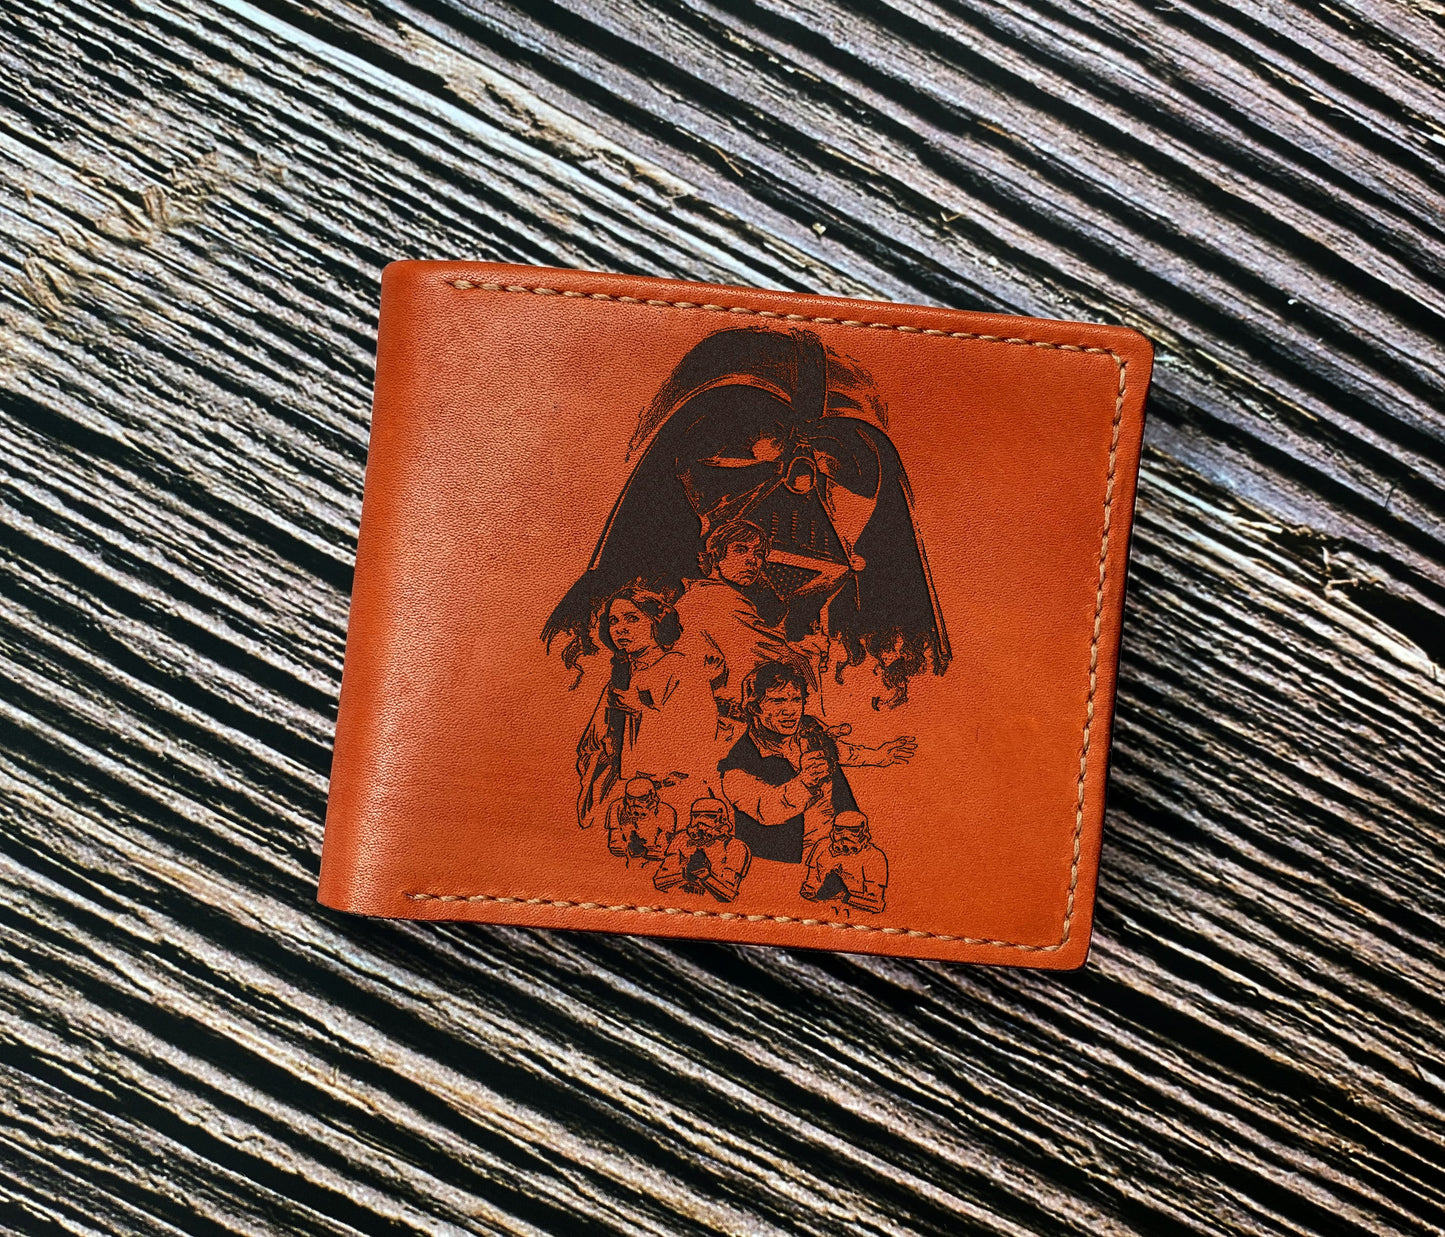 Starwars leather bifold wallet, Darth Vader men's gift, wedding birthday anniversary present for him